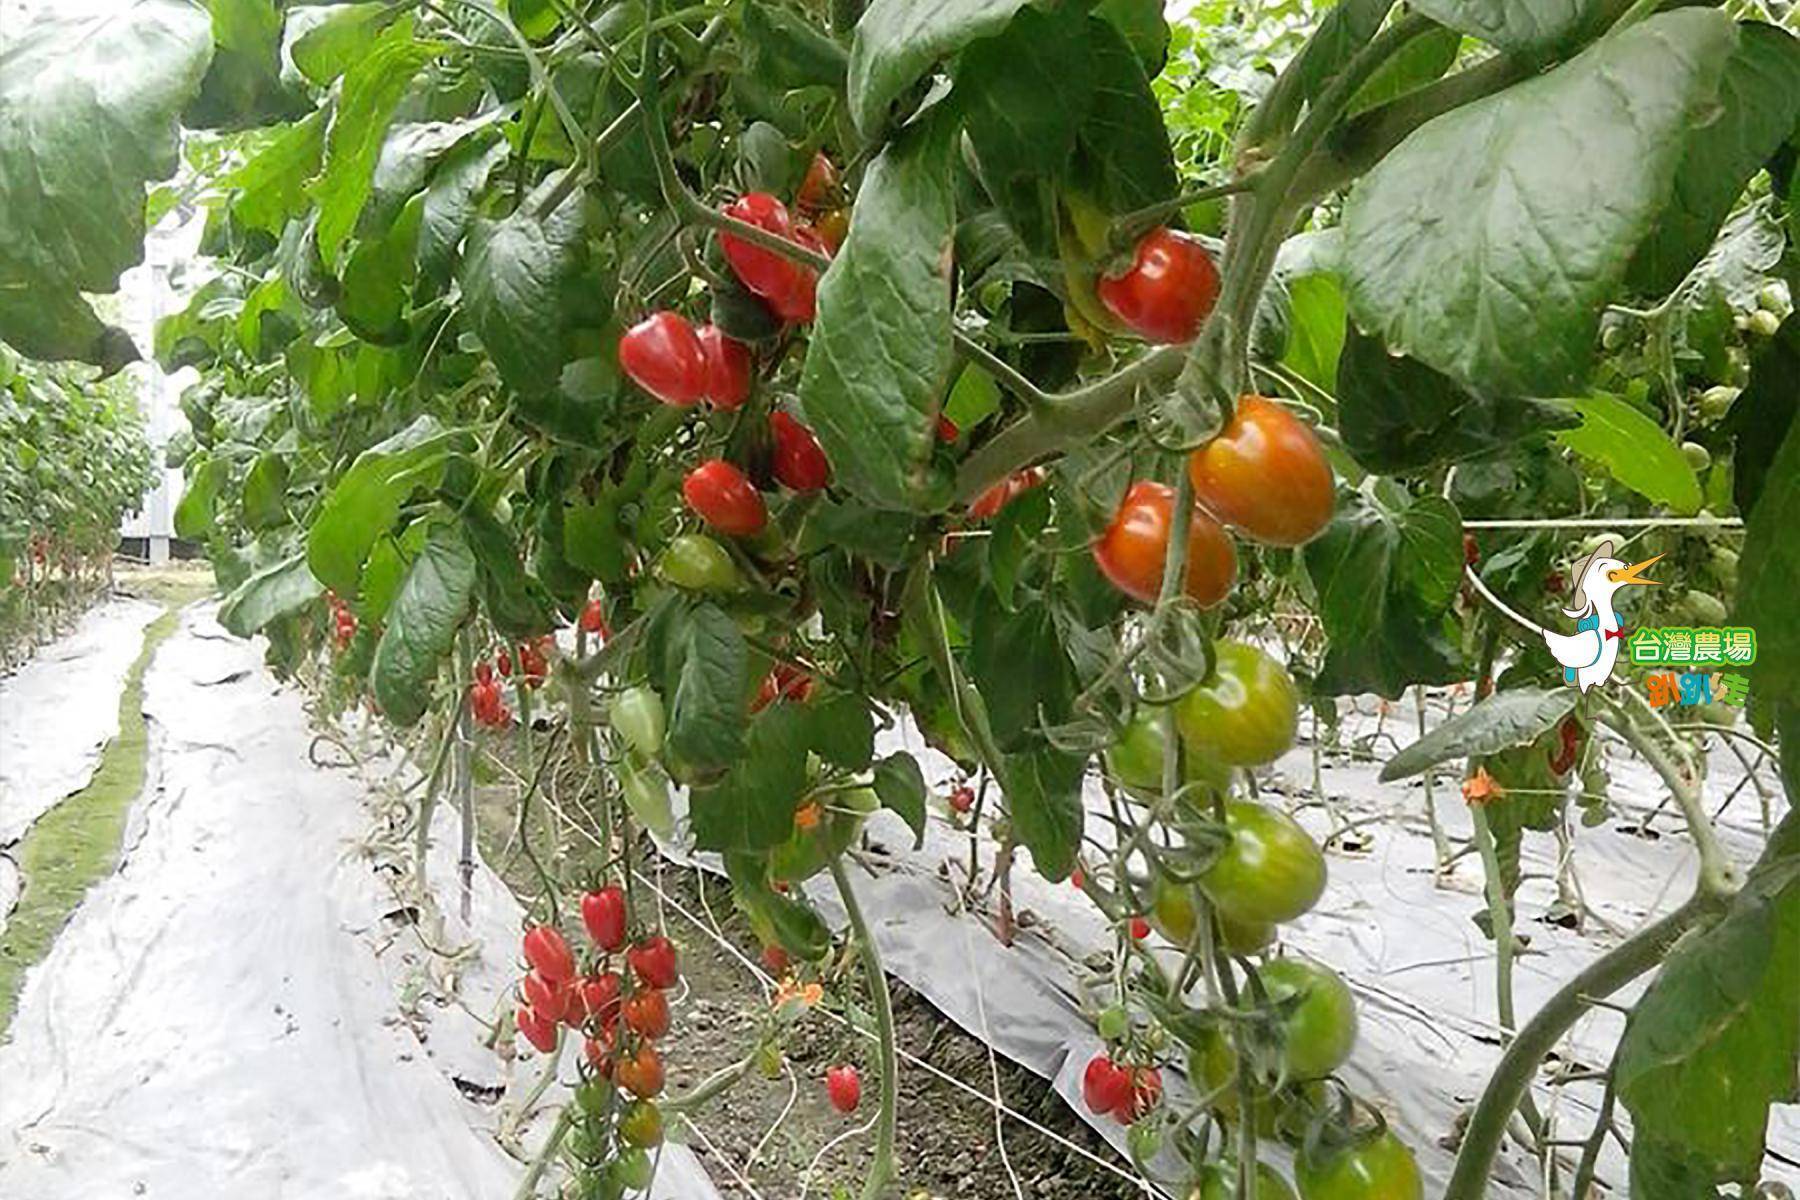 宜蘭-藤結教育農場-採果(番茄)體驗券4